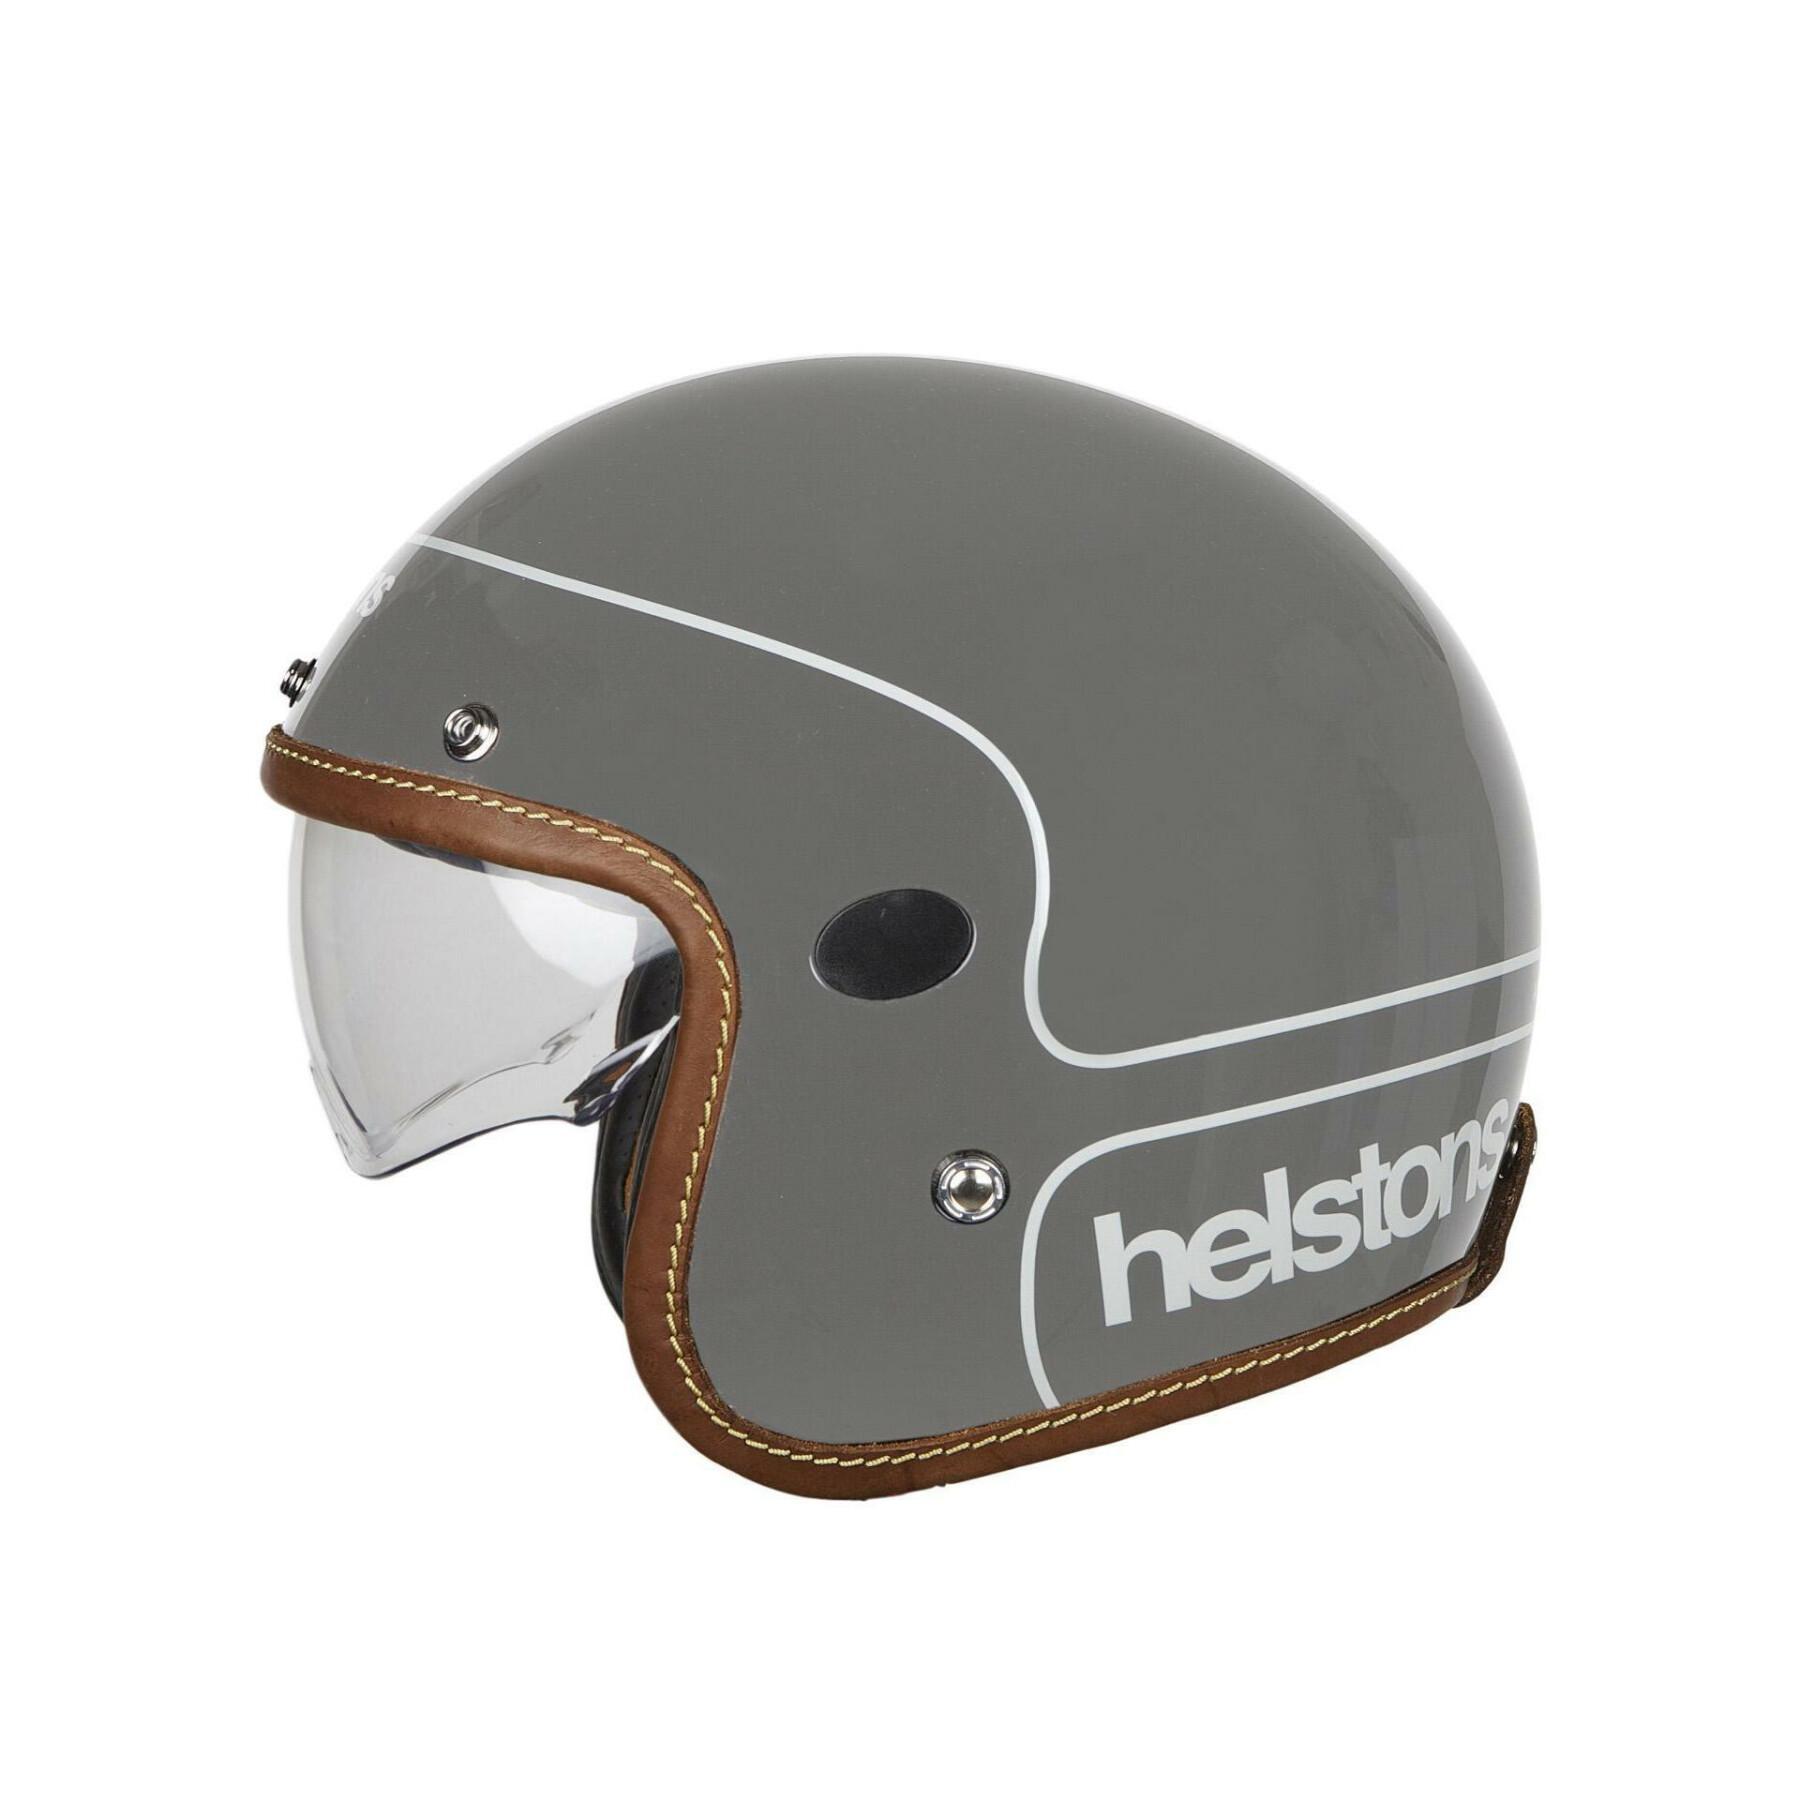 Carbon fiber helmet Helstons corporate helmet